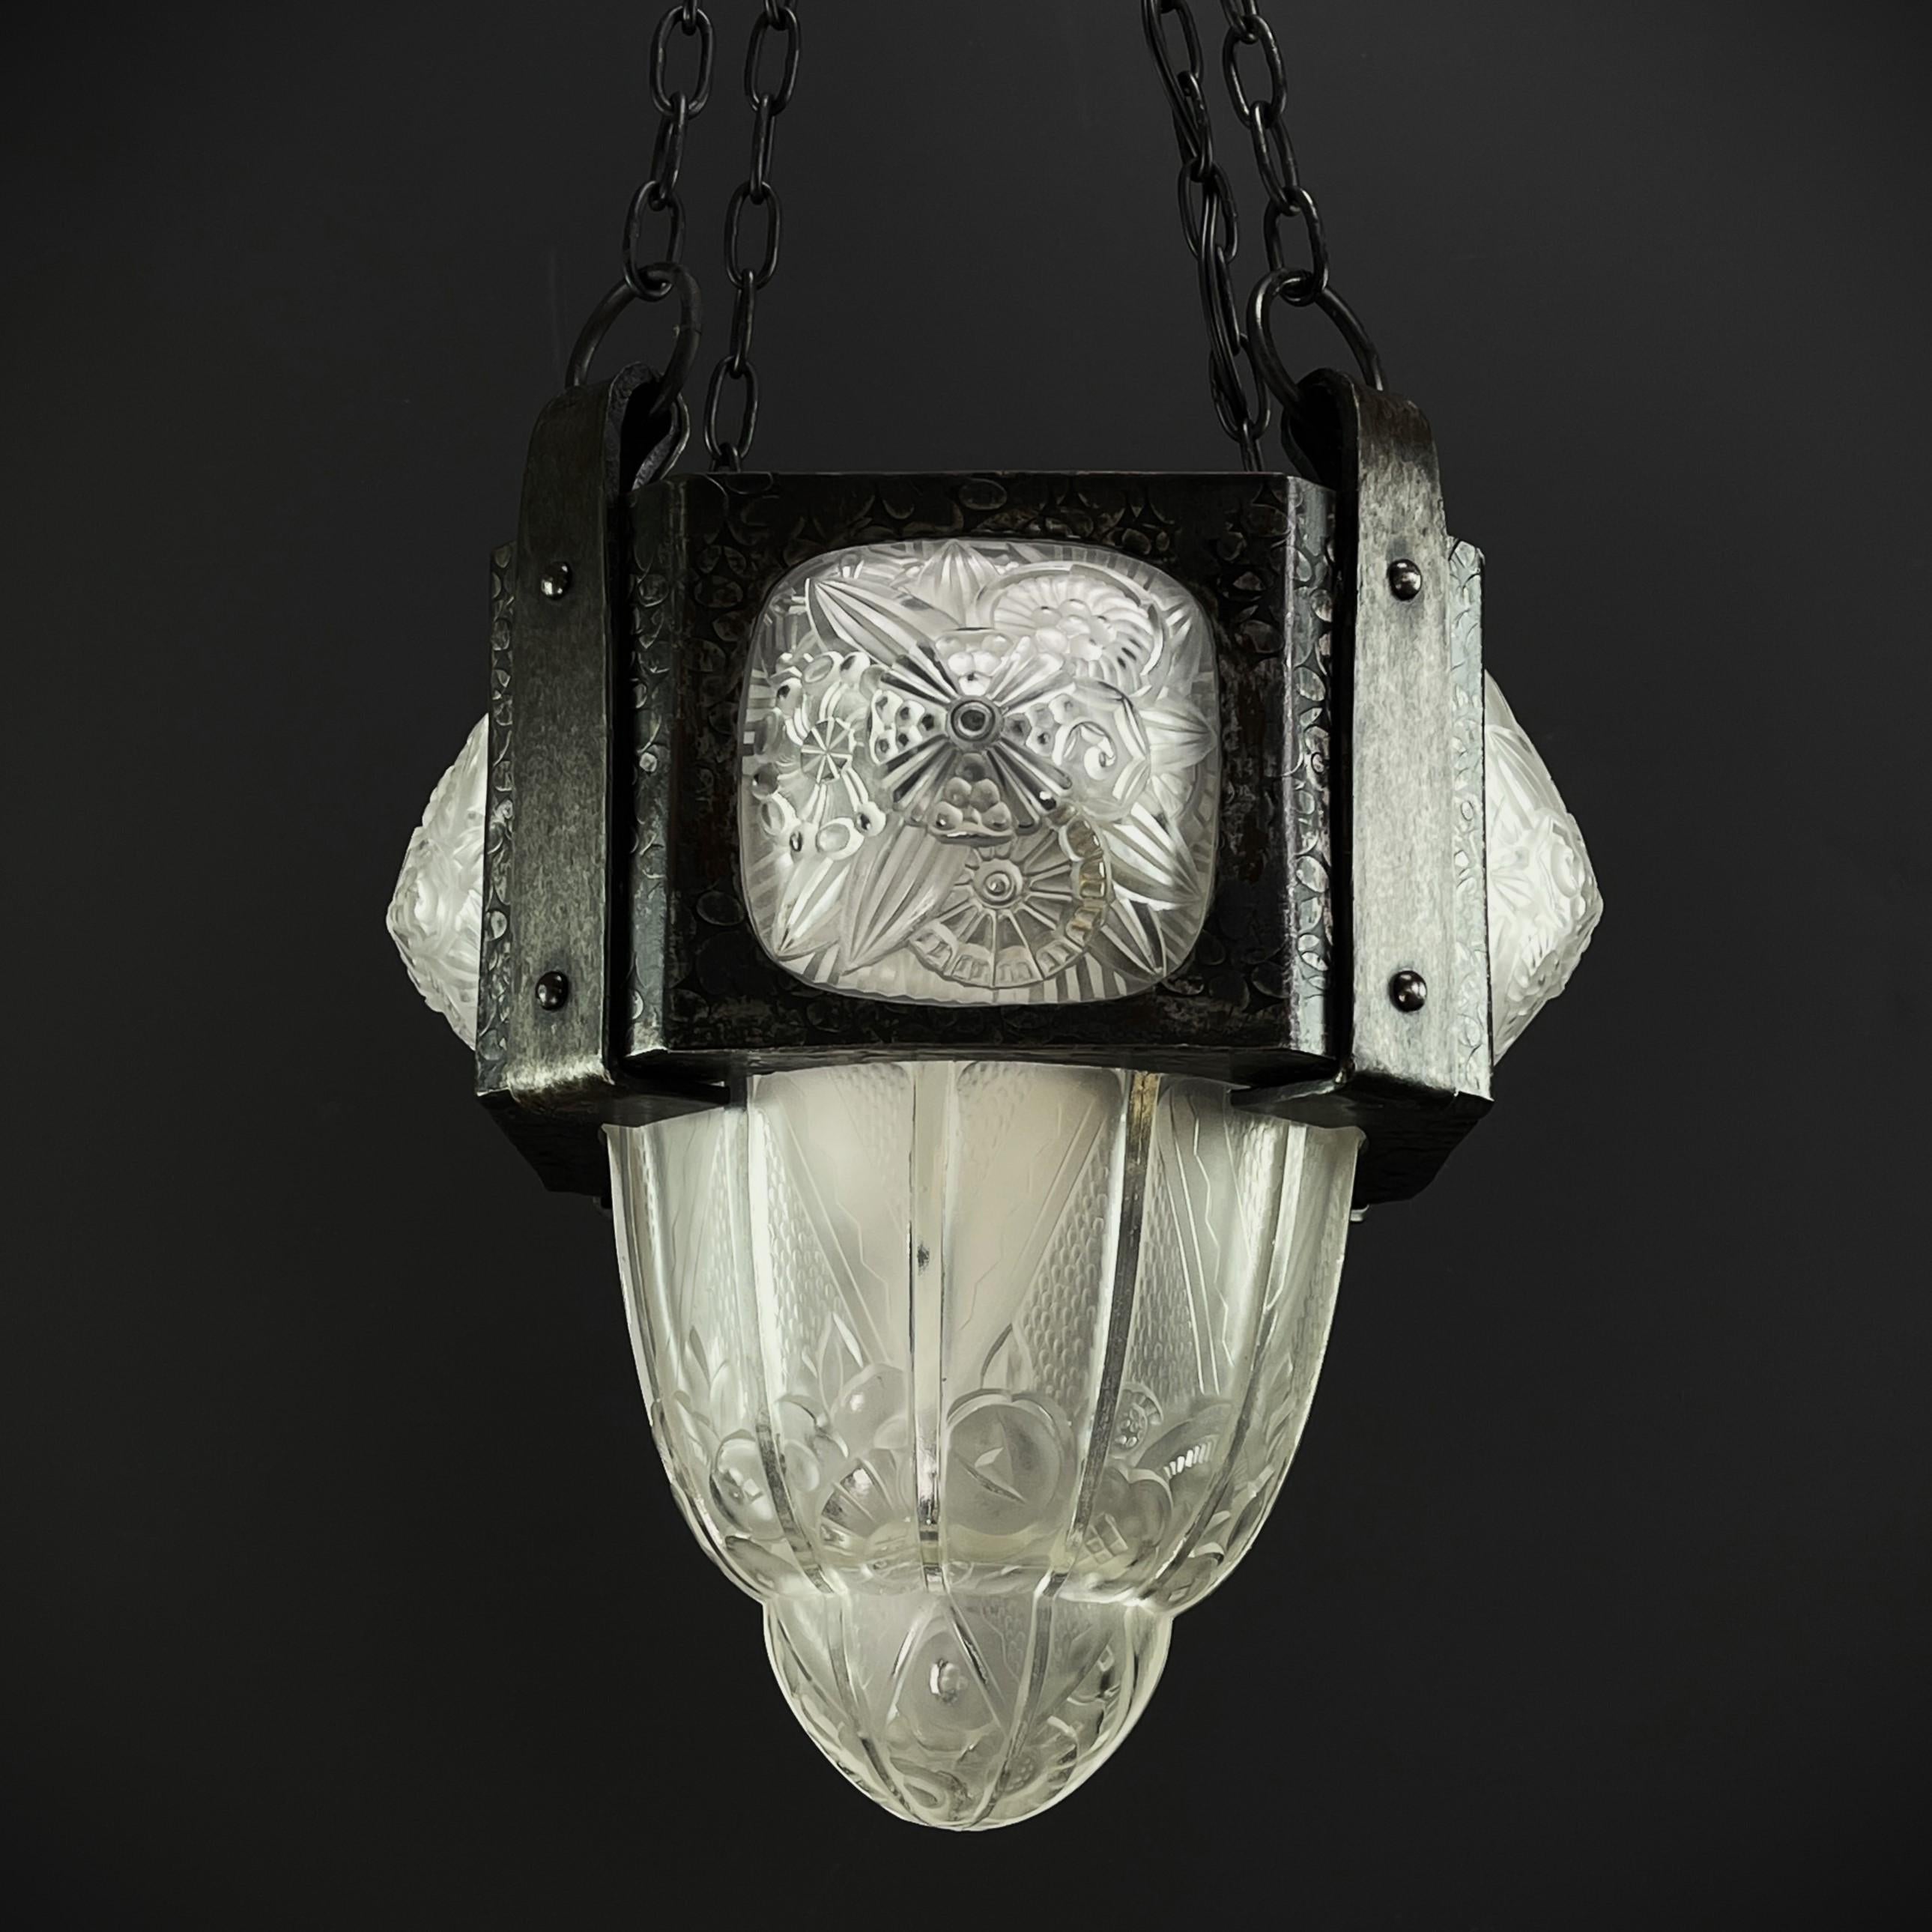 ART DECO lampe Hettier & Vincent lustre en fer forgé années 30

Le plafonnier ART DECO de Hettier & Vincent est un exemple fascinant de la maîtrise artisanale et du design exquis de ce célèbre fabricant de verre français. Ce plafonnier signé allie